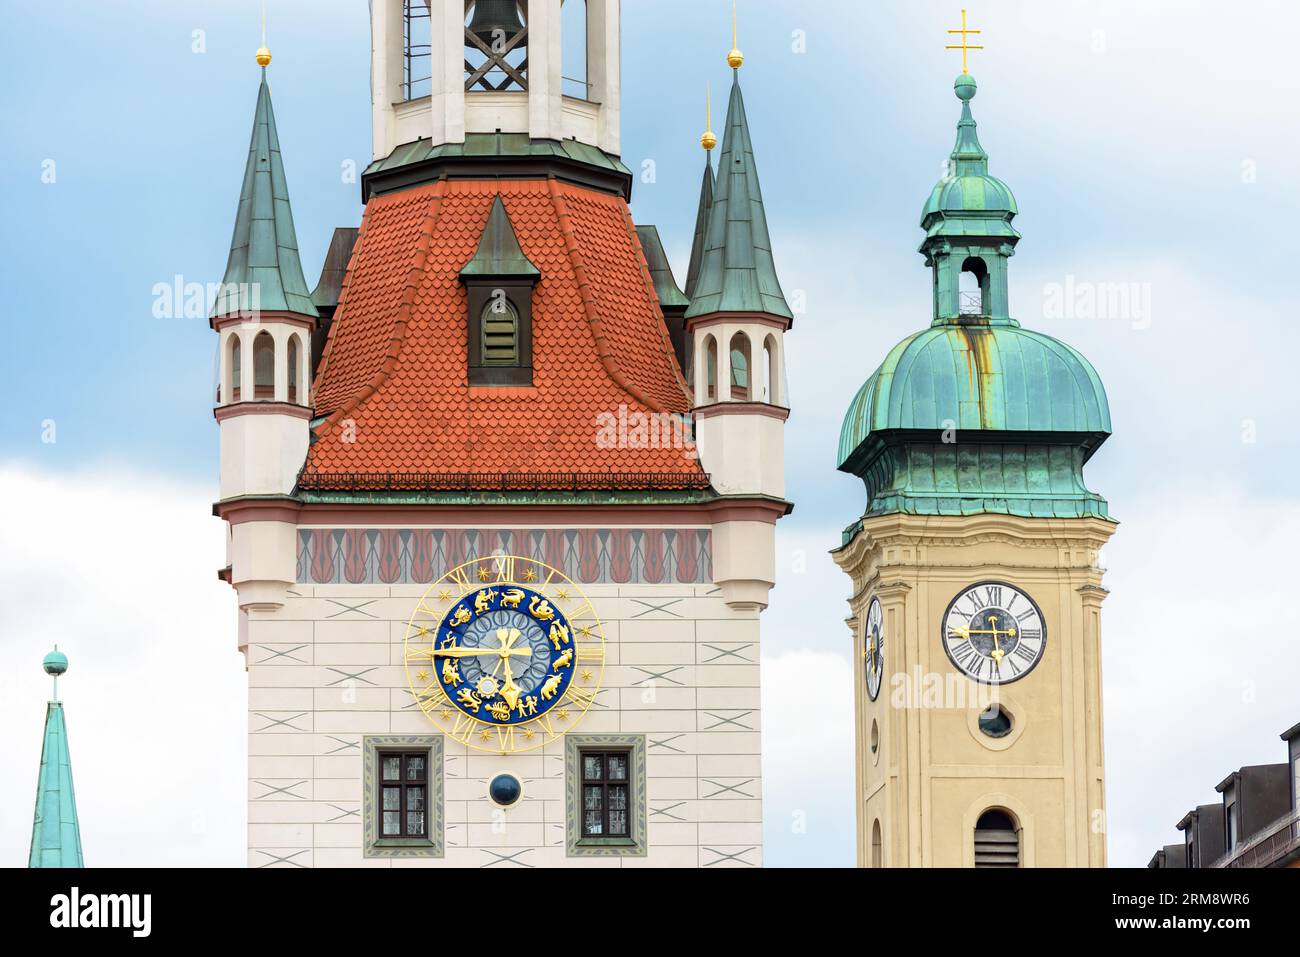 Primo piano della Torre dell'orologio del Municipio vecchio (Rathaus), Monaco, Baviera, Germania. E' il punto di riferimento di Monaco situato in piazza Marienplatz. Dettaglio di Gothic bu Foto Stock